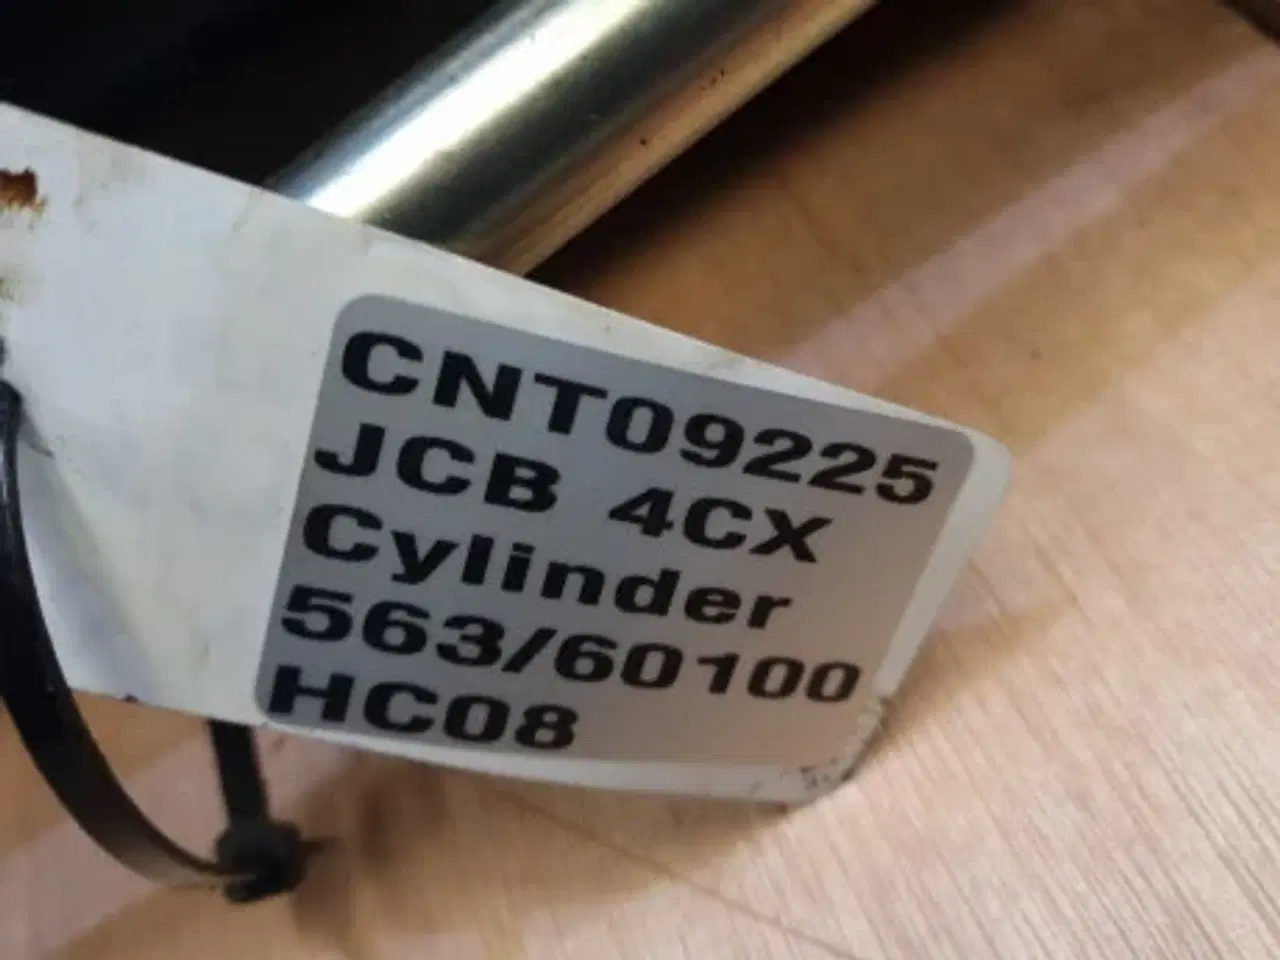 Billede 17 - JCB 4CX Cylinder 563/60100